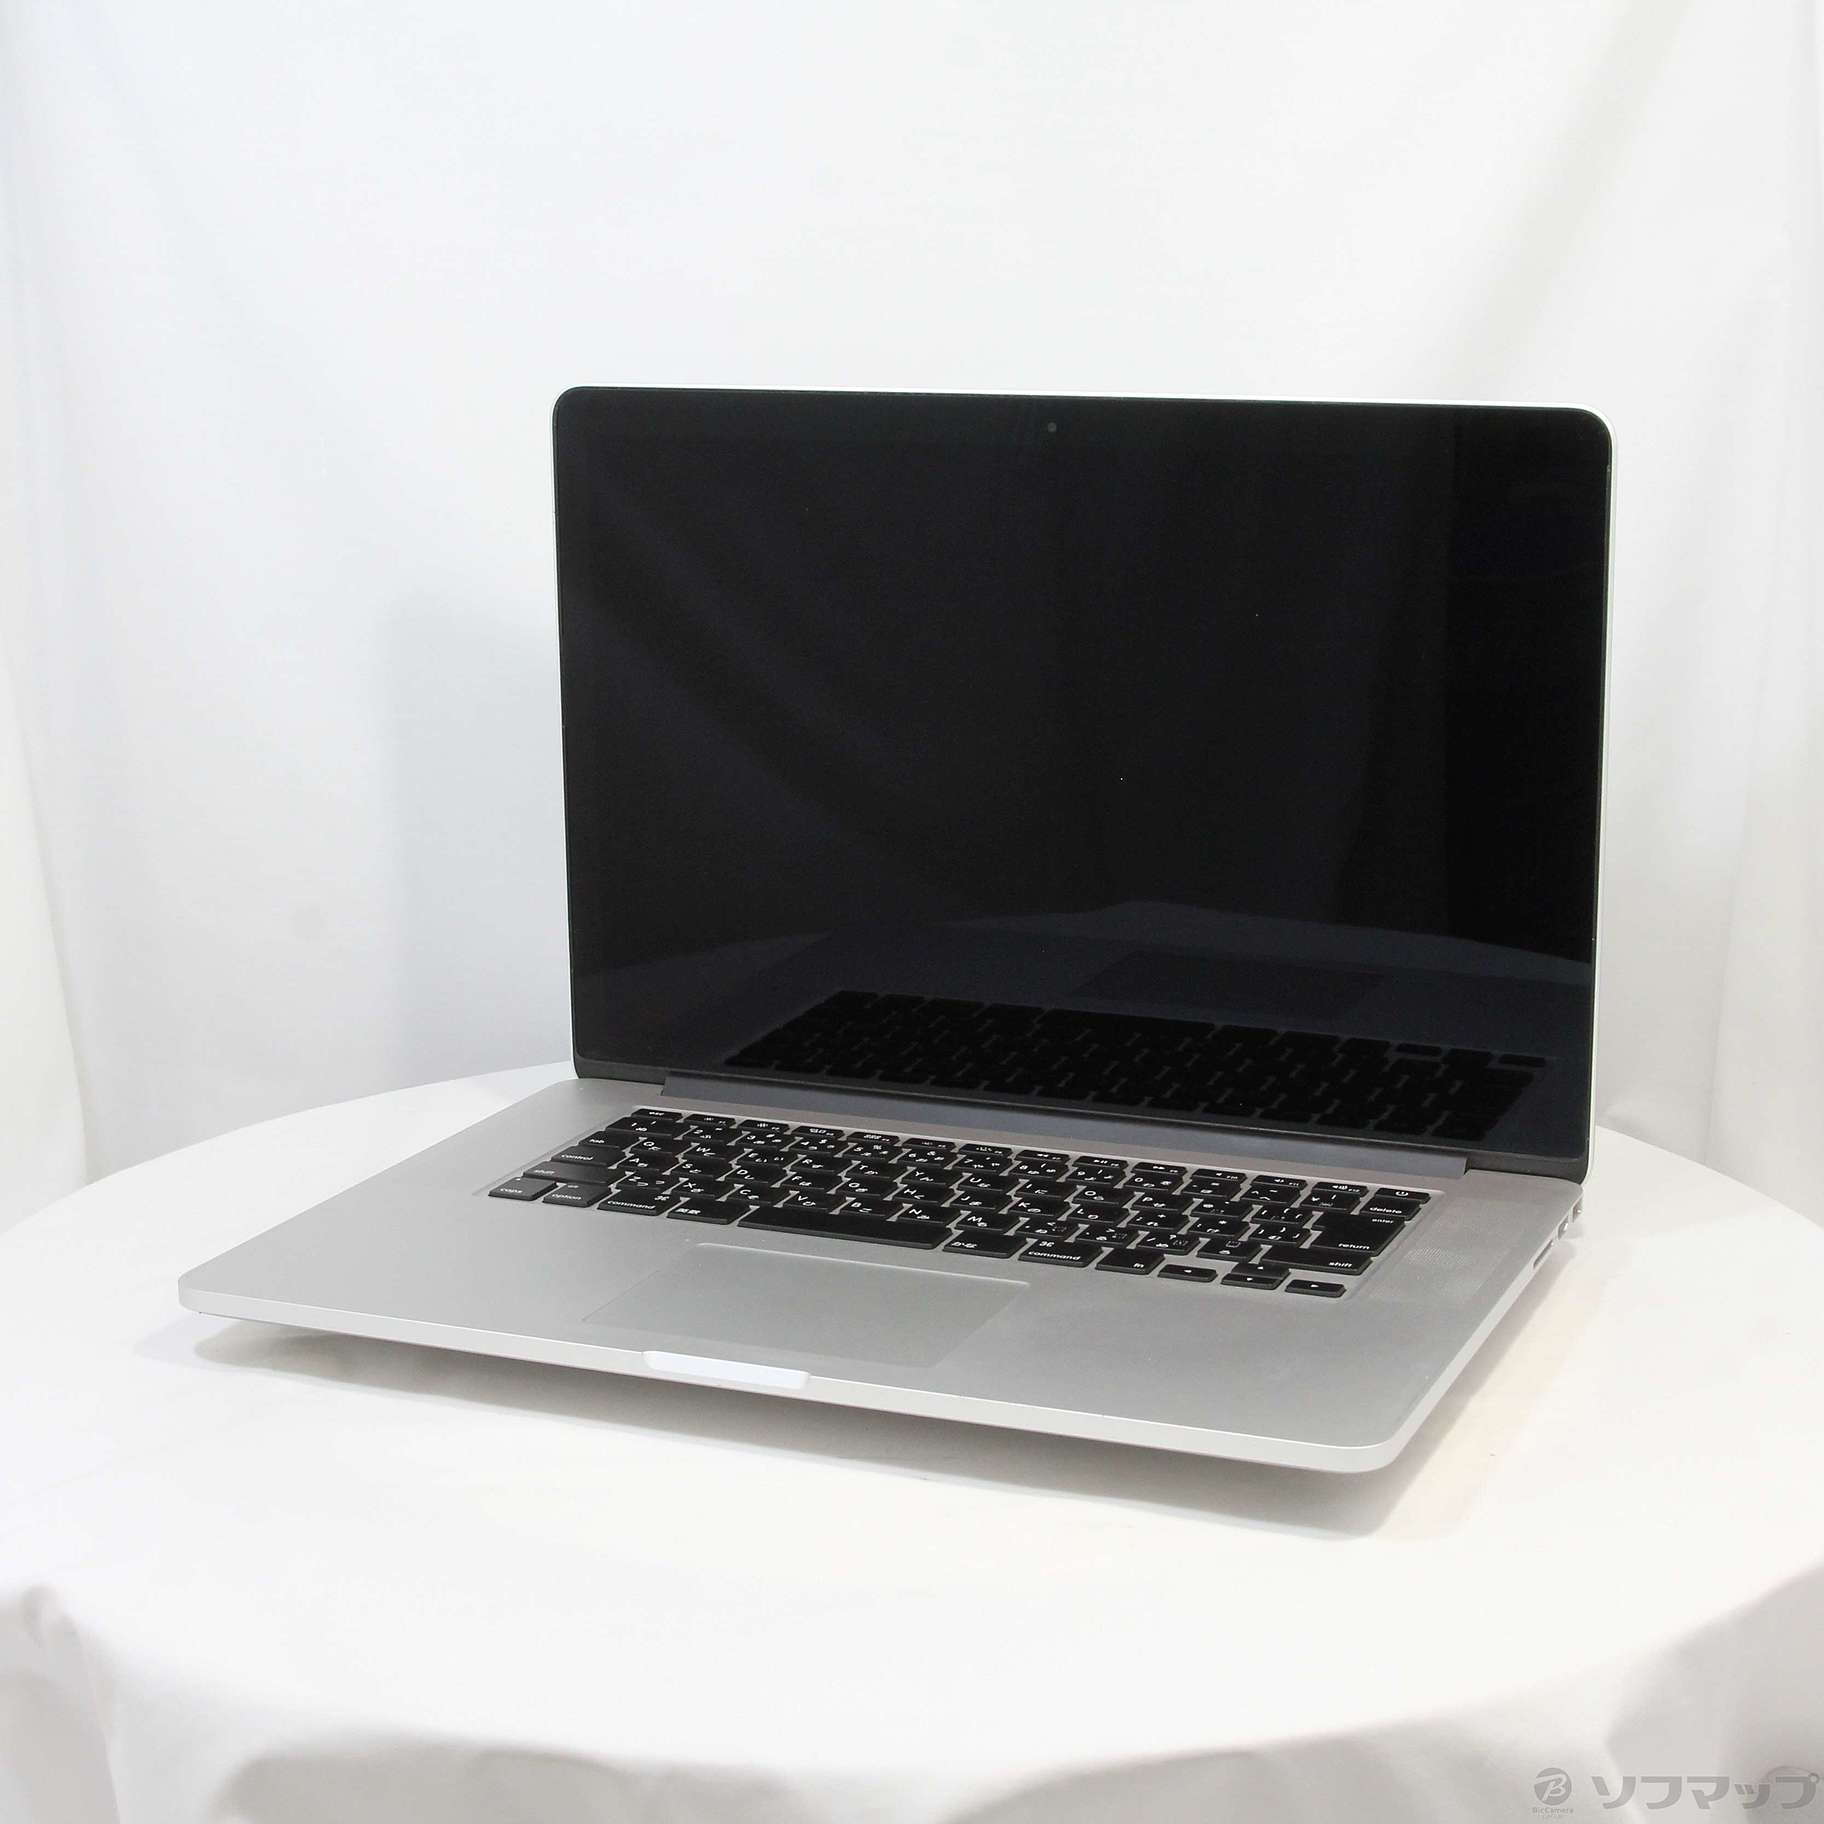 MacBookPro 15インチ 8G SSD256GB late 2013 | www.tspea.org